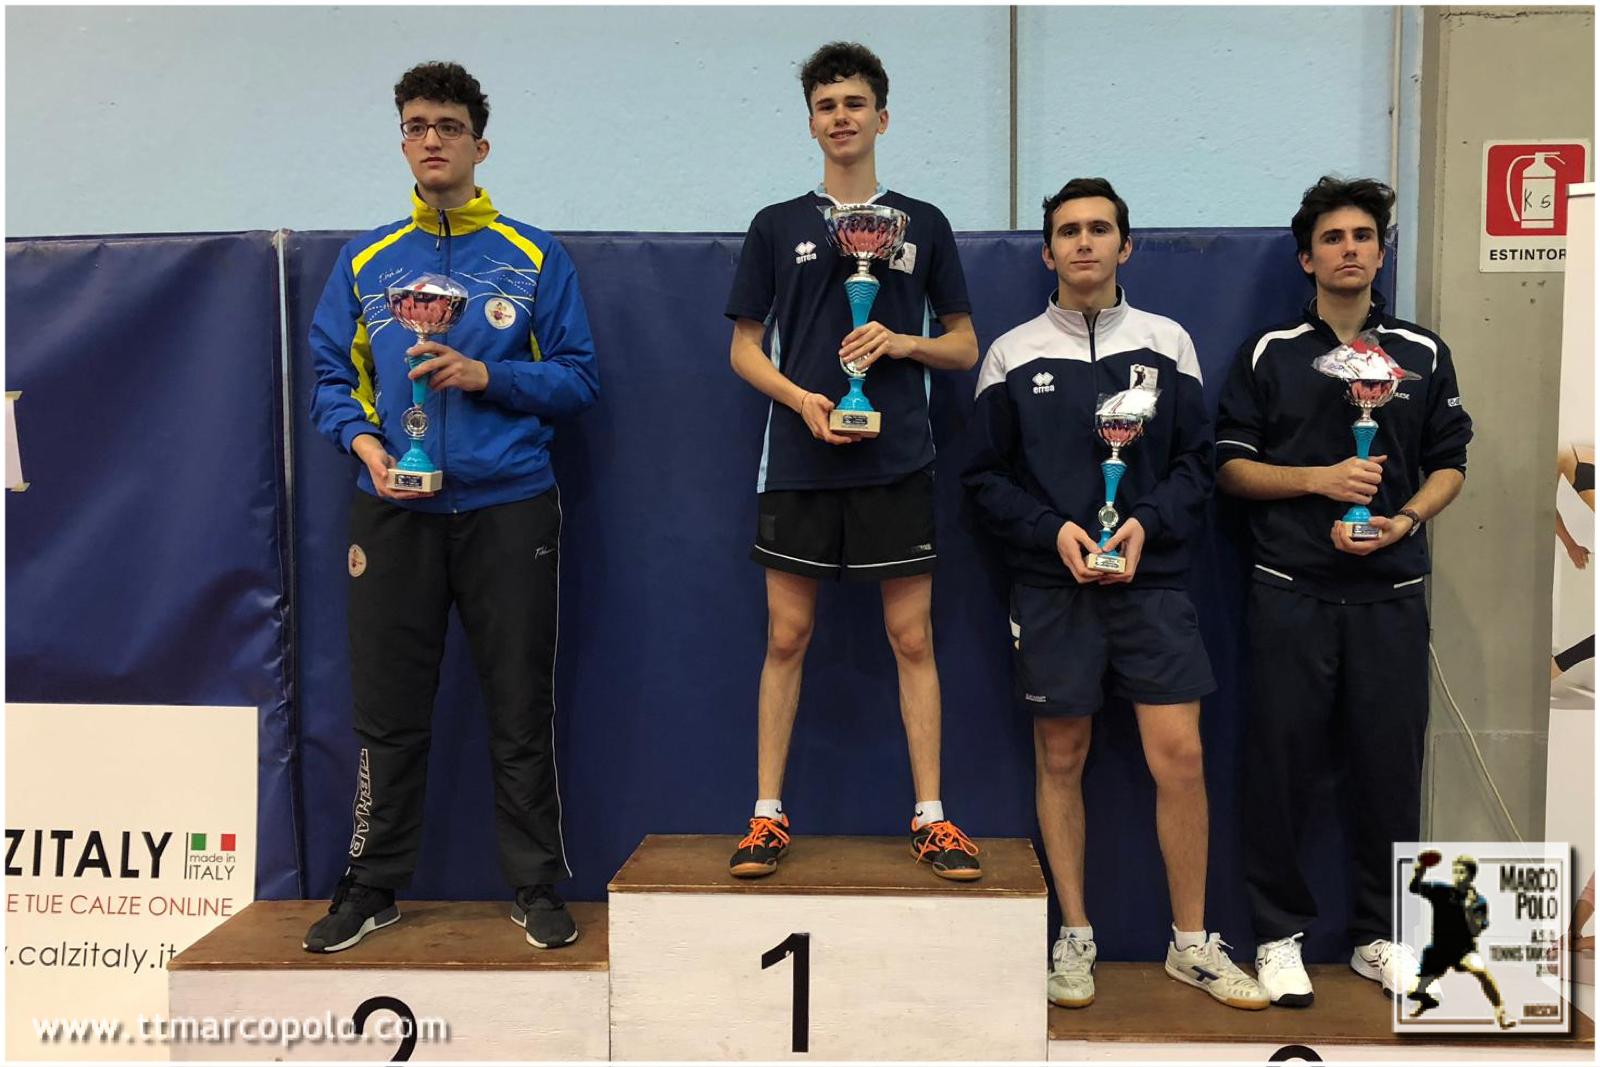 Stefano Moras e Filippo Cantella sul podio del torneo Juniores di Castel Goffredo (MN)